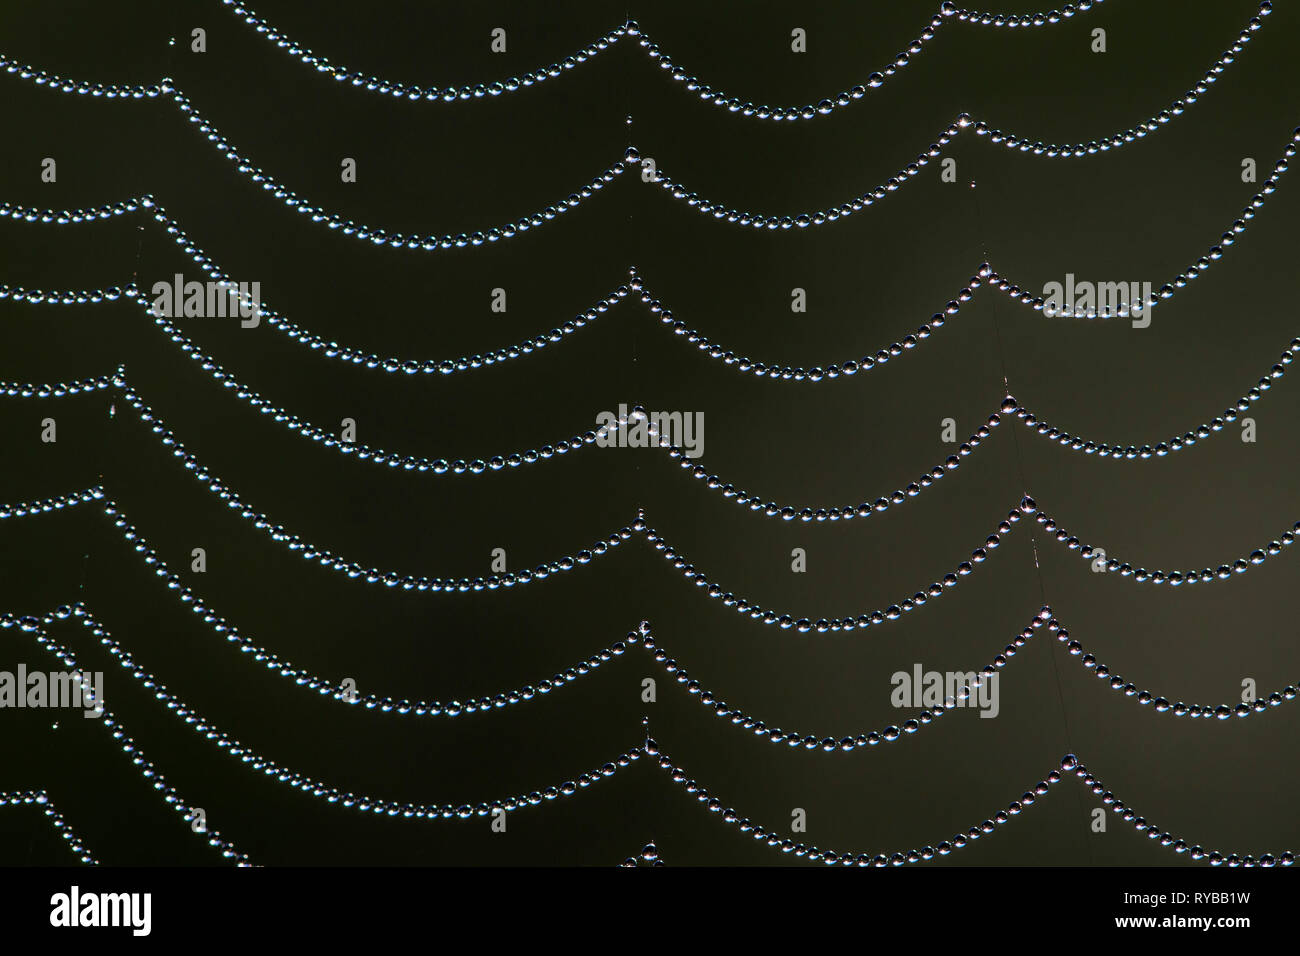 Close-up de dewdrops / gotas de rocío en tela de araña / spiderweb Foto de stock